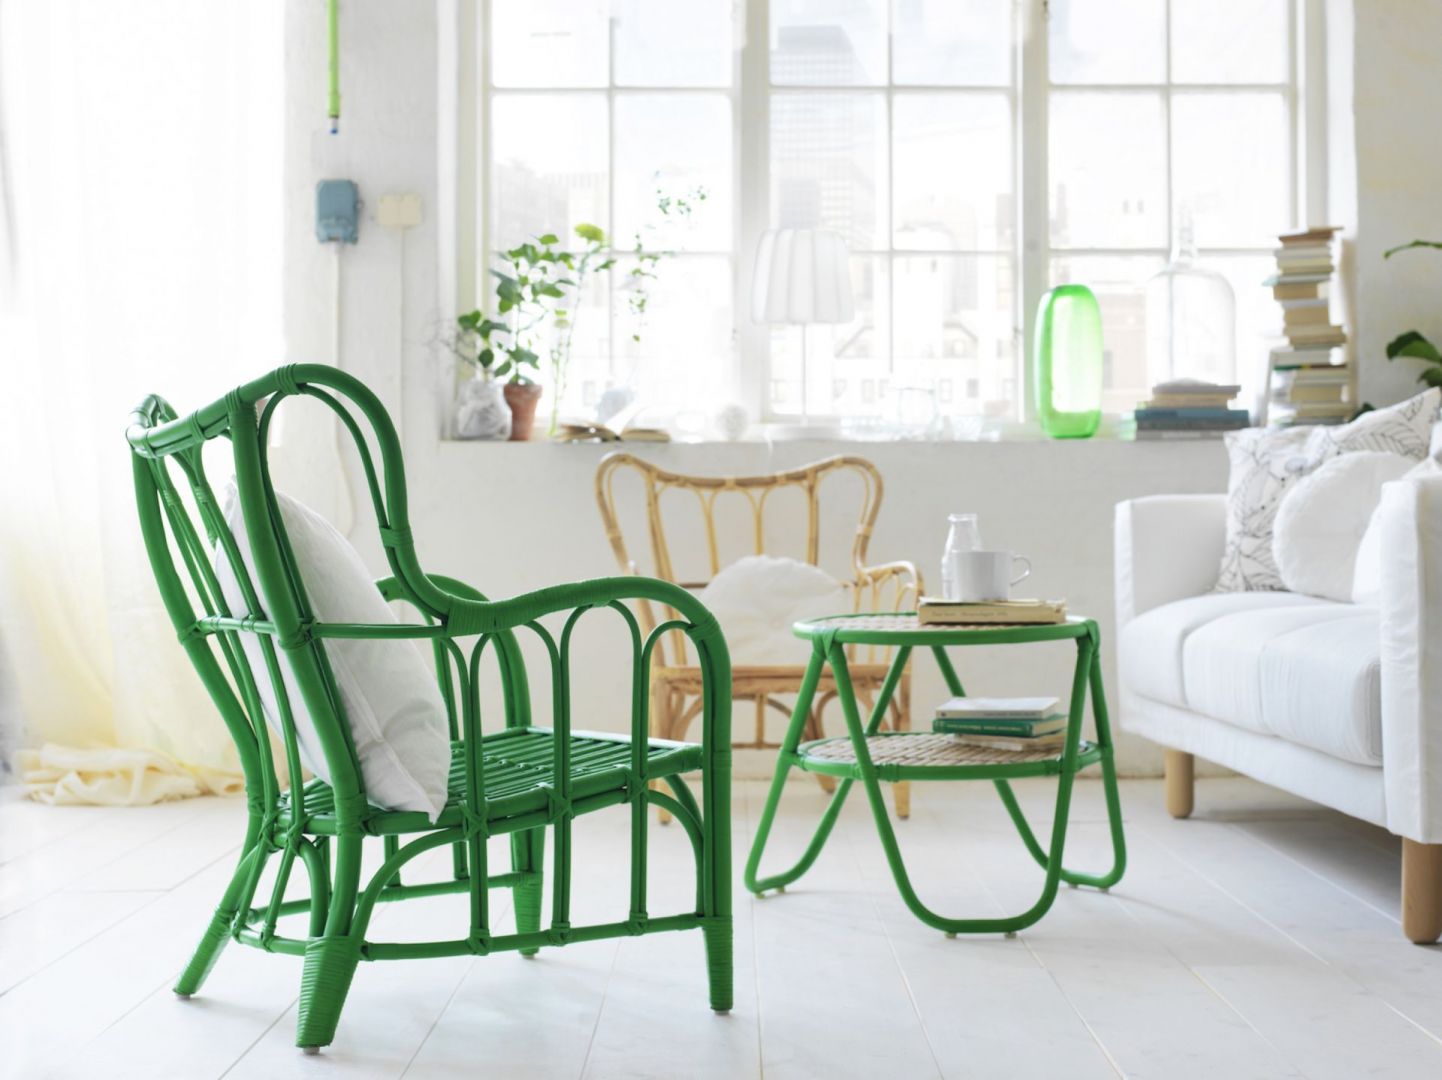 Zielony fotel wykonany z rattanu to doskonały mebel na okres letni. Soczysty kolor poprawi humor, a szerokie siedzisko zapewni ogromną wygodę. Fot. IKEA